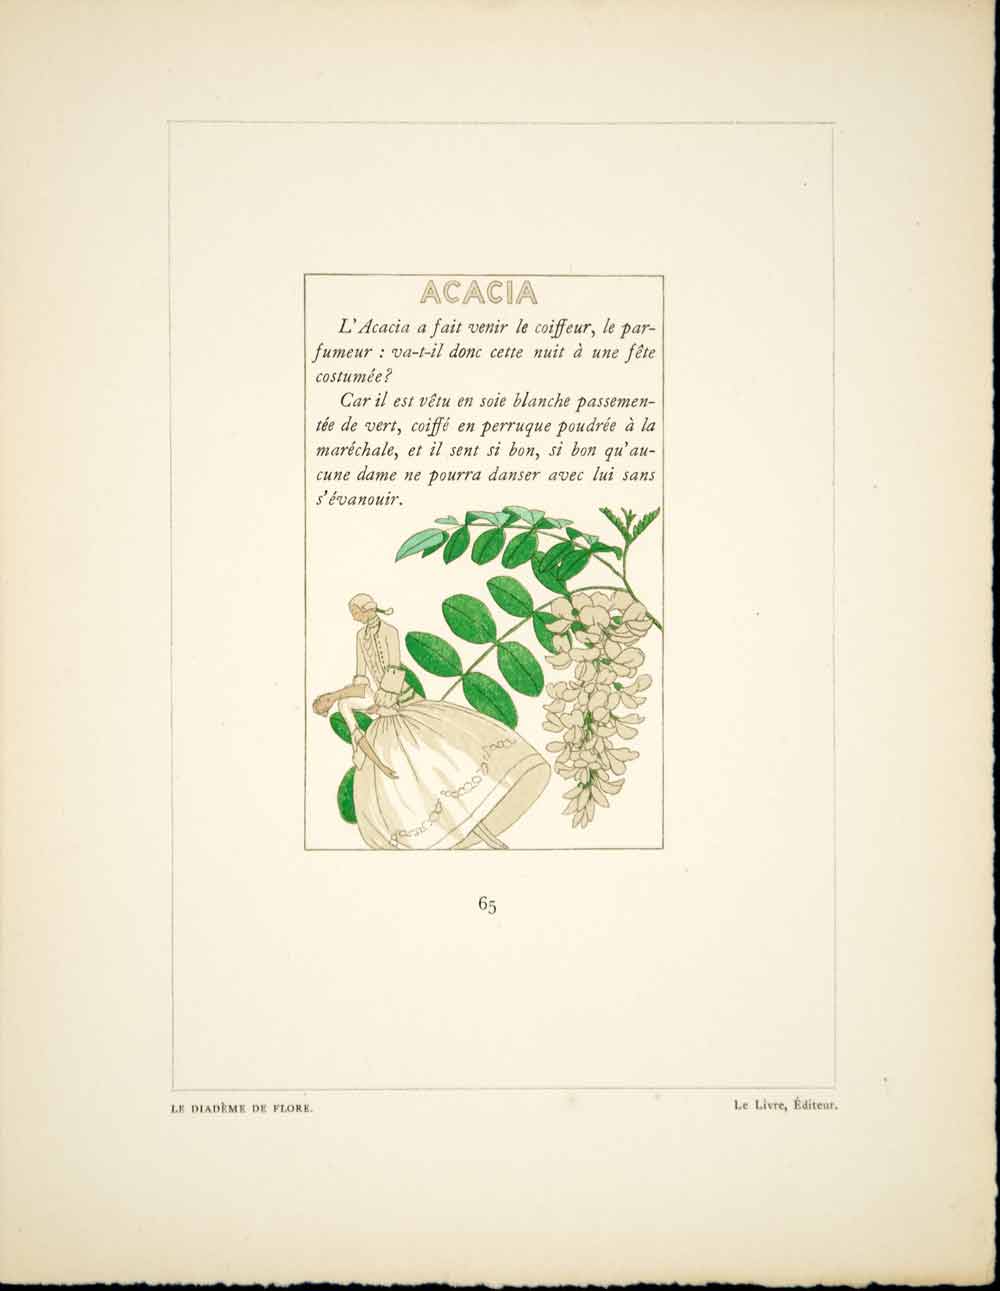 1930 Pochoir Print A E Marty Acacia Botantical Diademe de Flore ADLM1